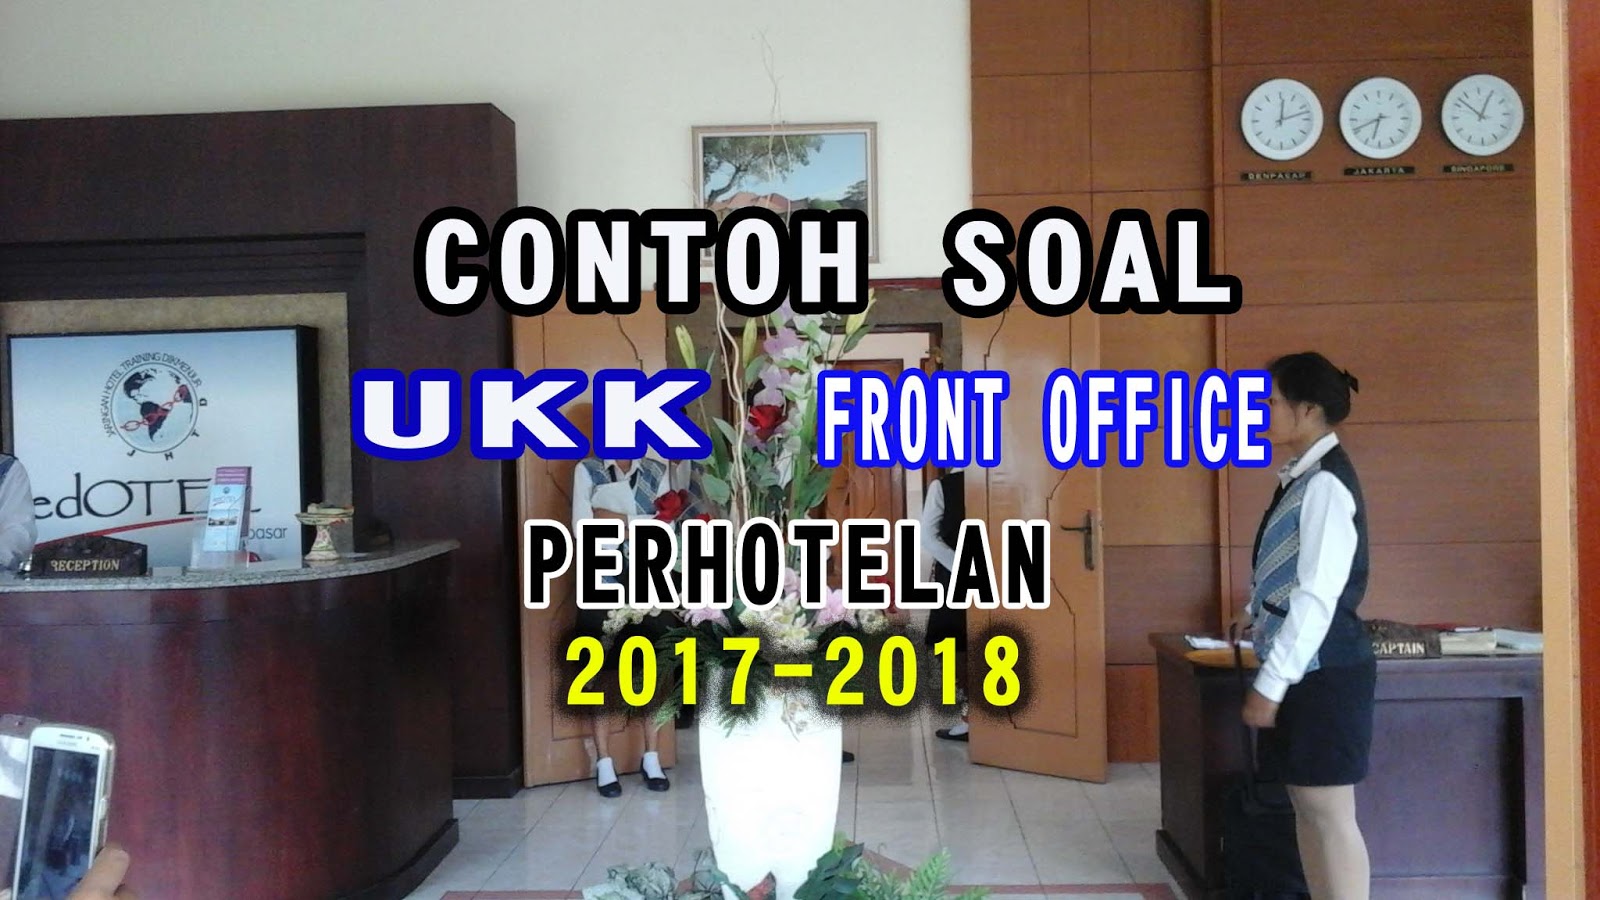 Contoh Soal Ukk Akomodasi Perhotelan Tahun 2017 2018 Bidang Pekerjaan Cluster Front Office